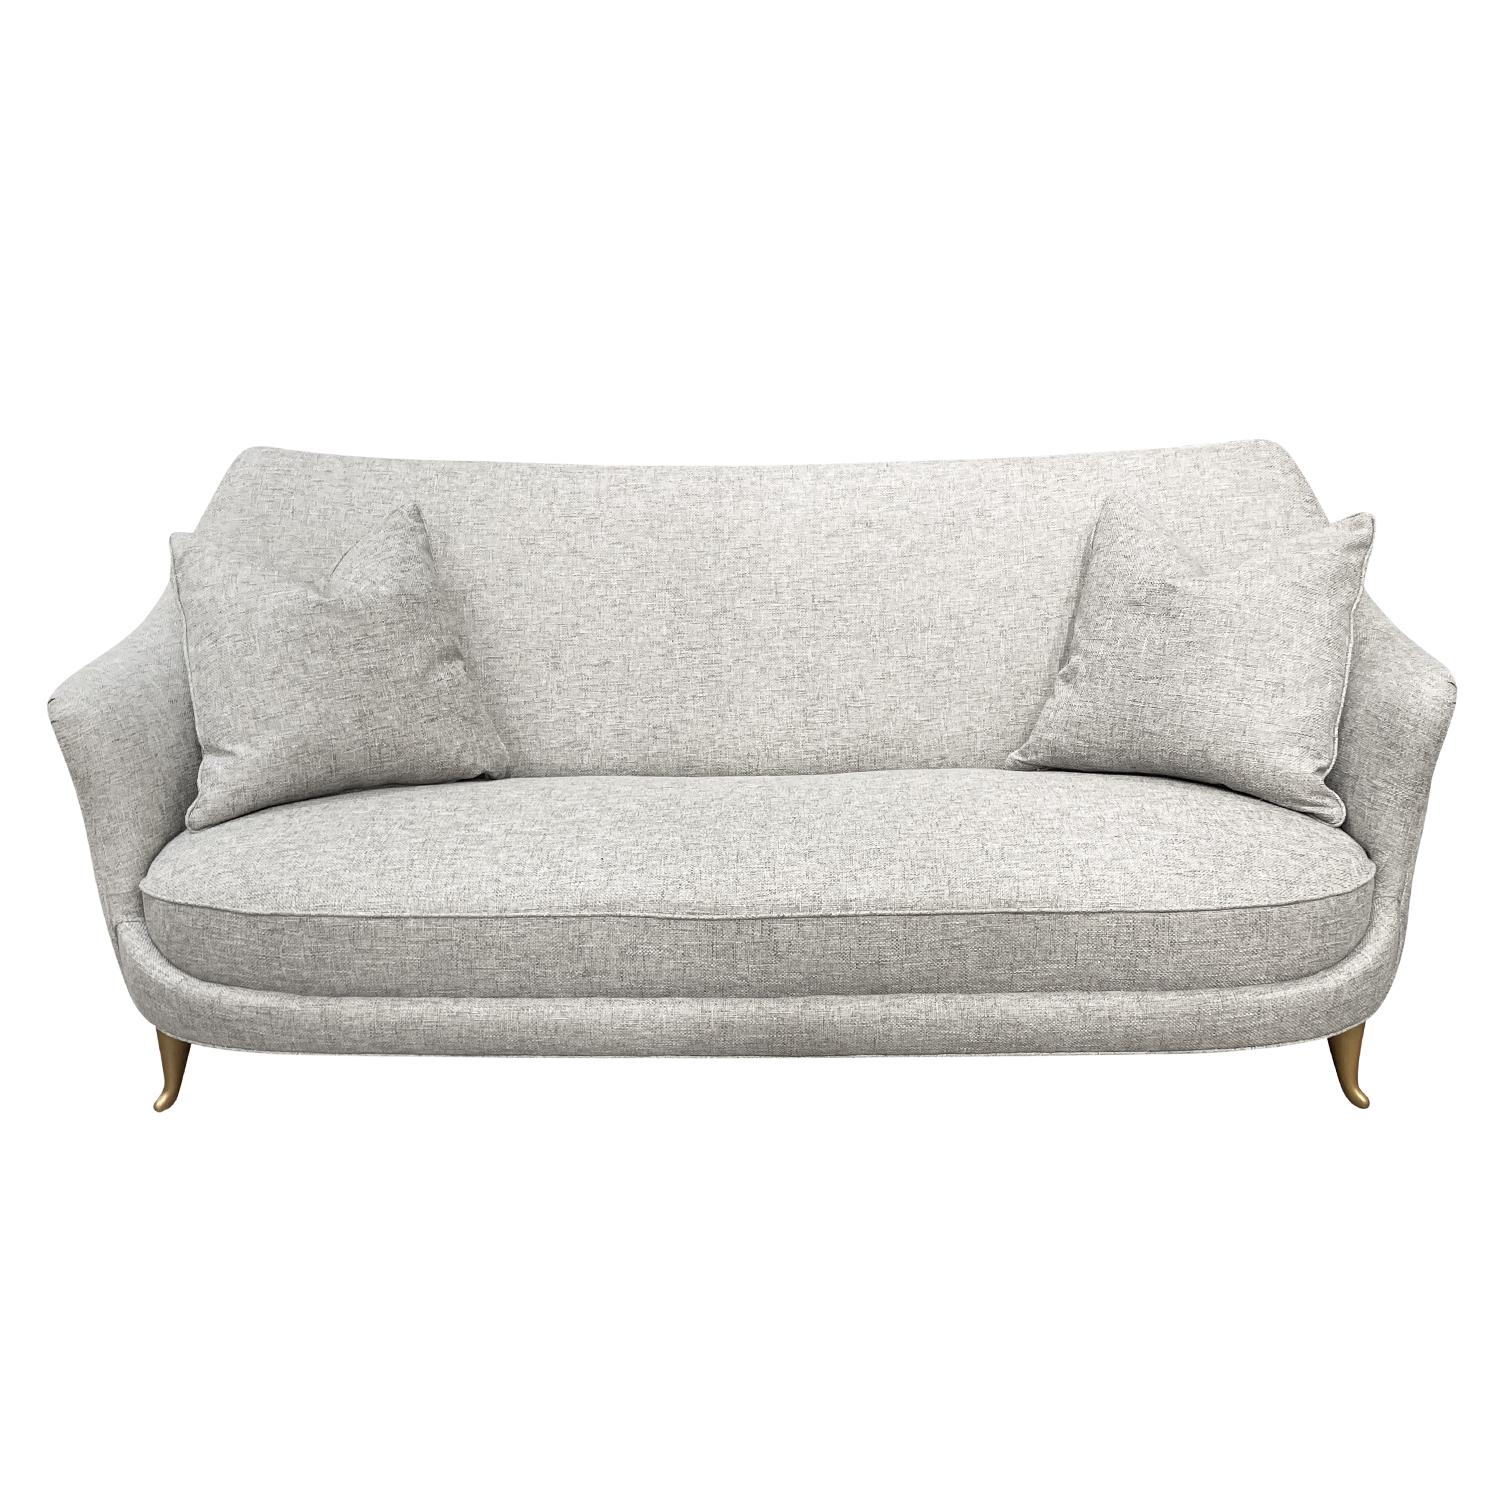 Ein Vintage Mid-Century modernes italienisches Zweisitzer-Sofa oder Sofa mit zwei Kissen, entworfen und hergestellt von ISA Bergamo, in gutem Zustand. Die Rückenlehne des kleinen Diwans, Canapé, hat eine schwebende Rückenlehne mit sanften,